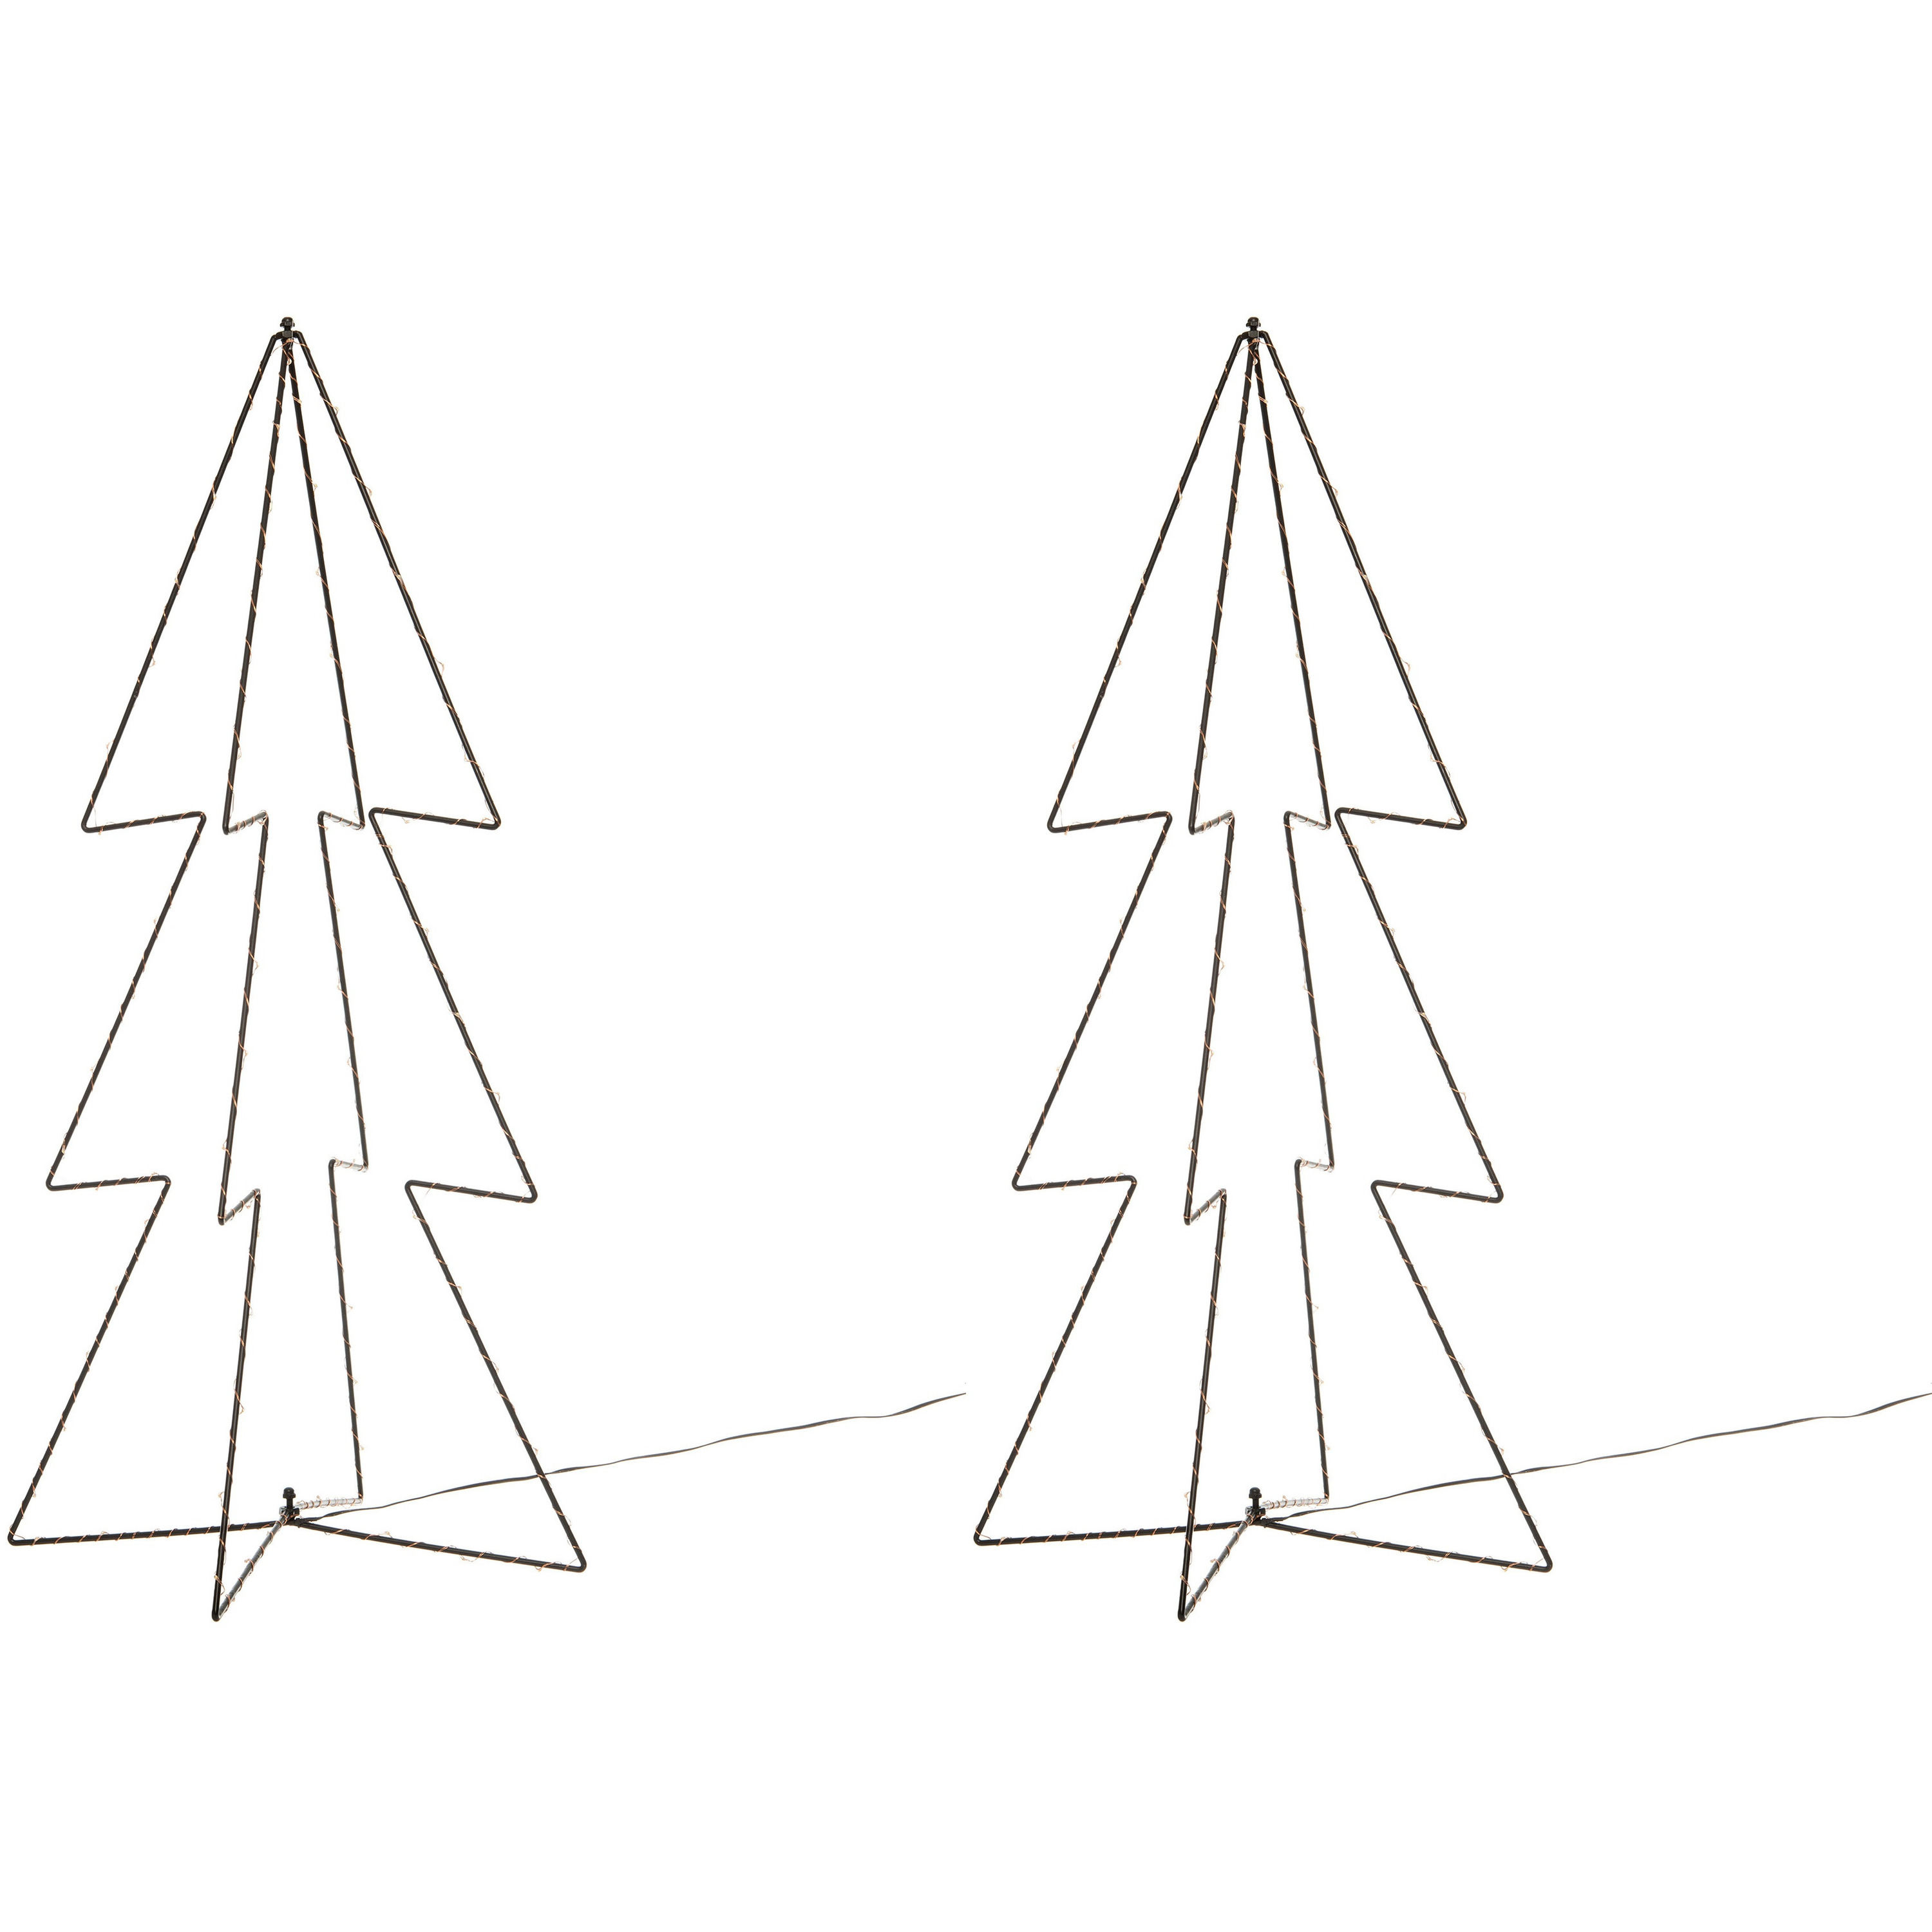 2x stuks verlichte figuren 3D kerstbomen-lichtbomen 91 cm voor buiten